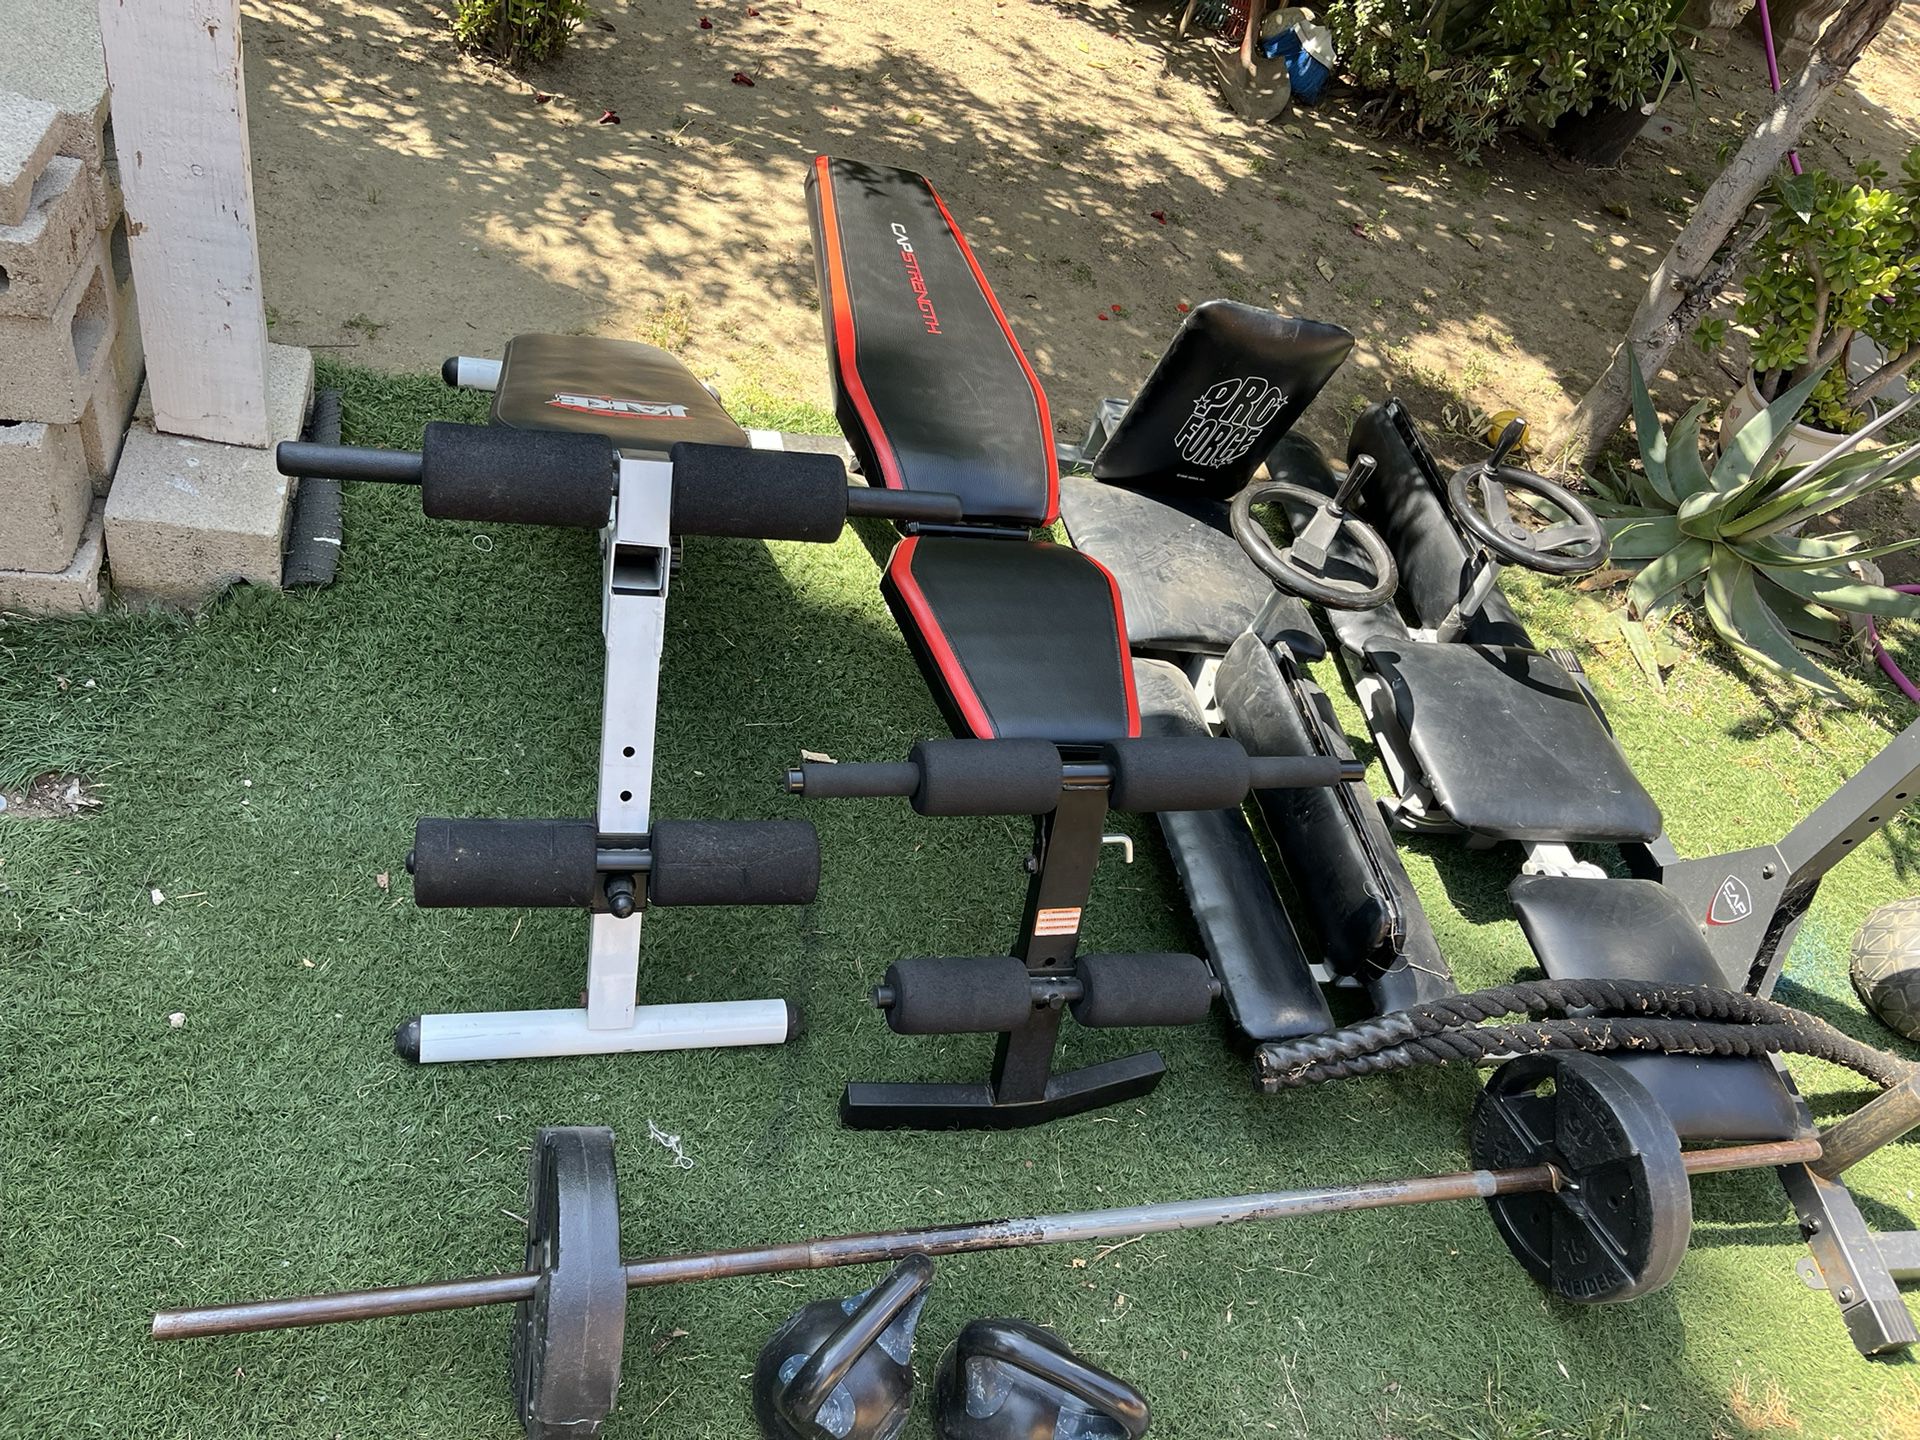 Workout Equipment 